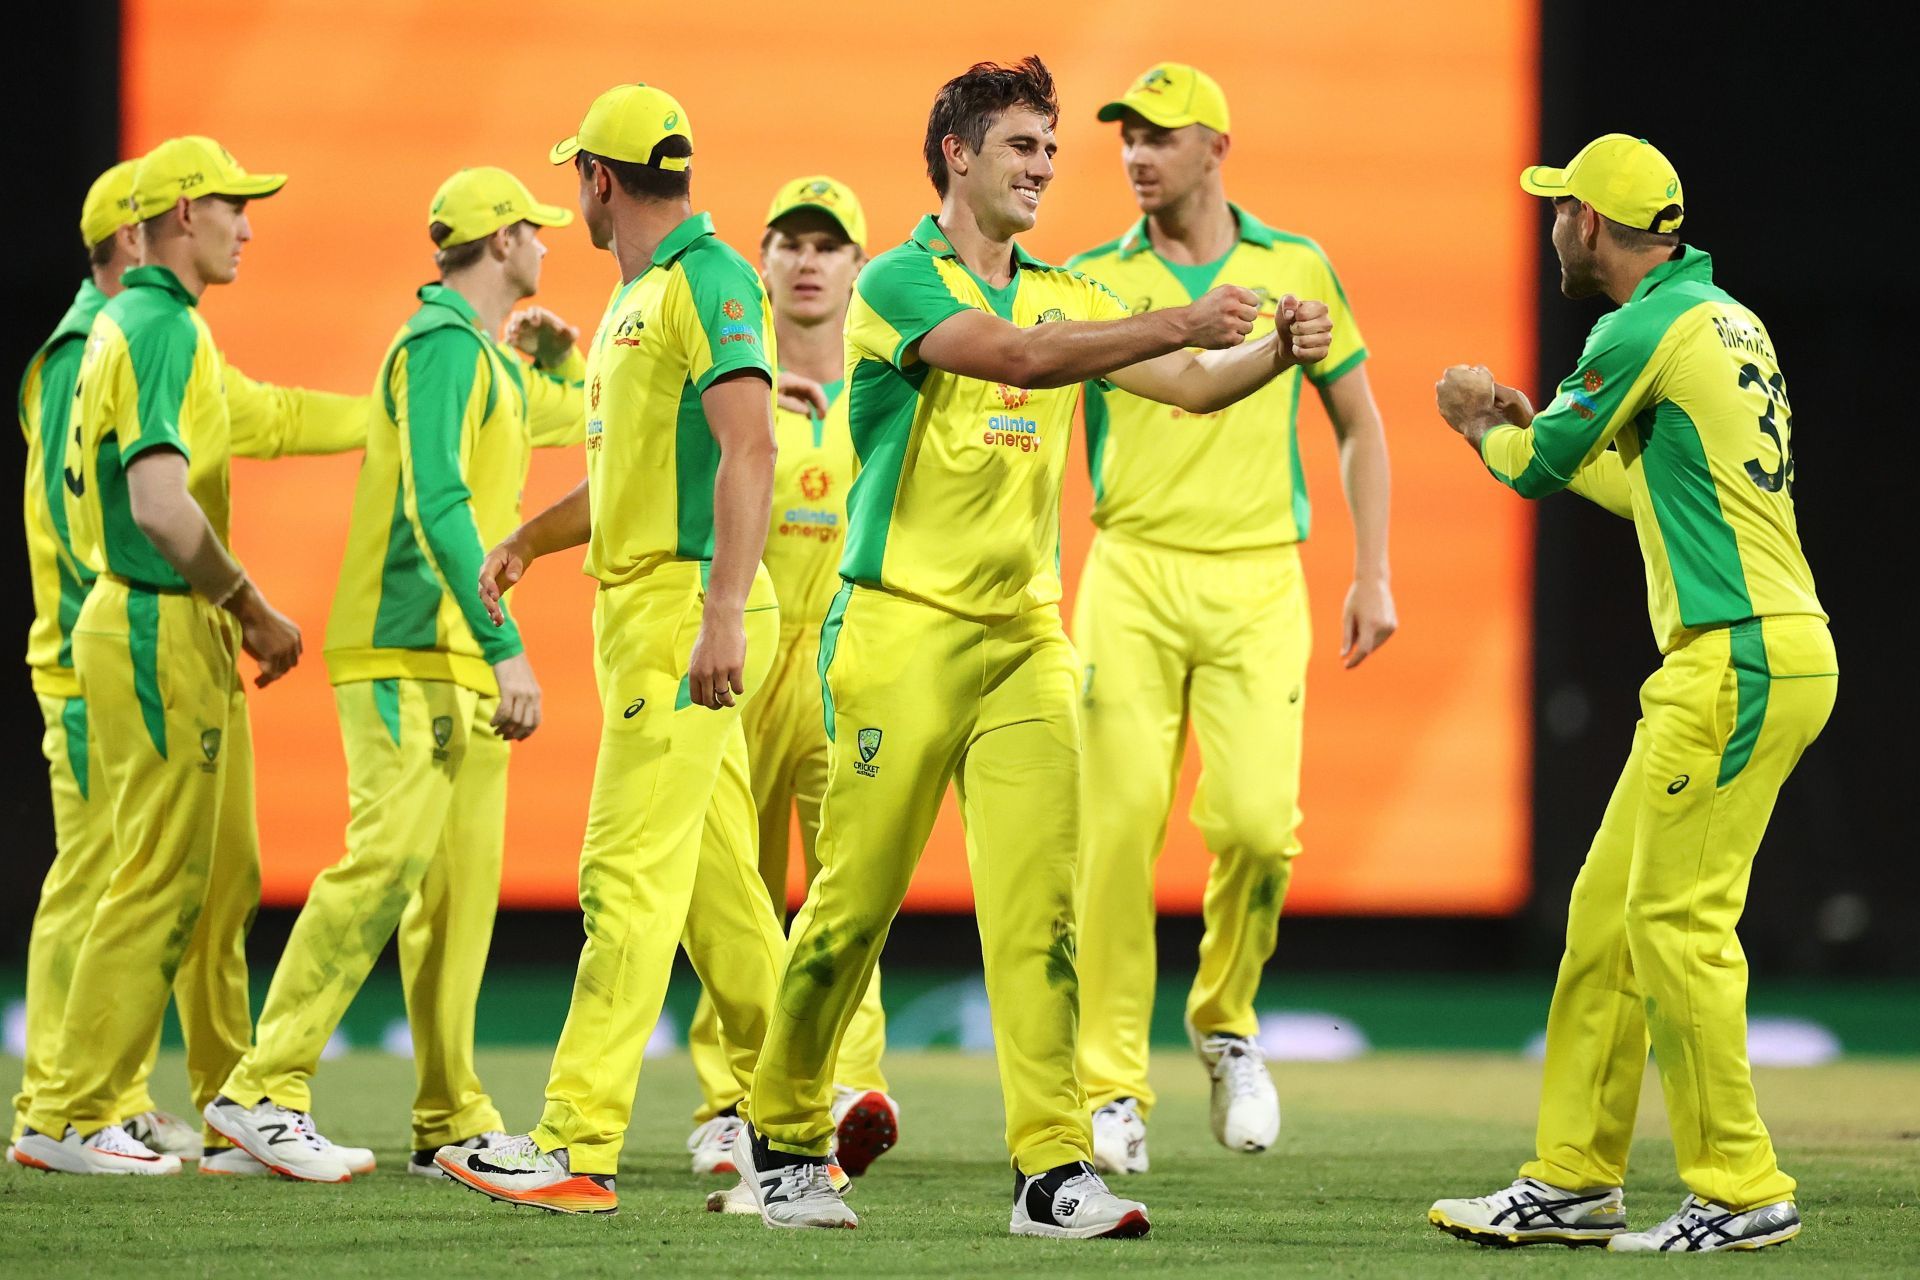 Australia v India - ODI Game 2